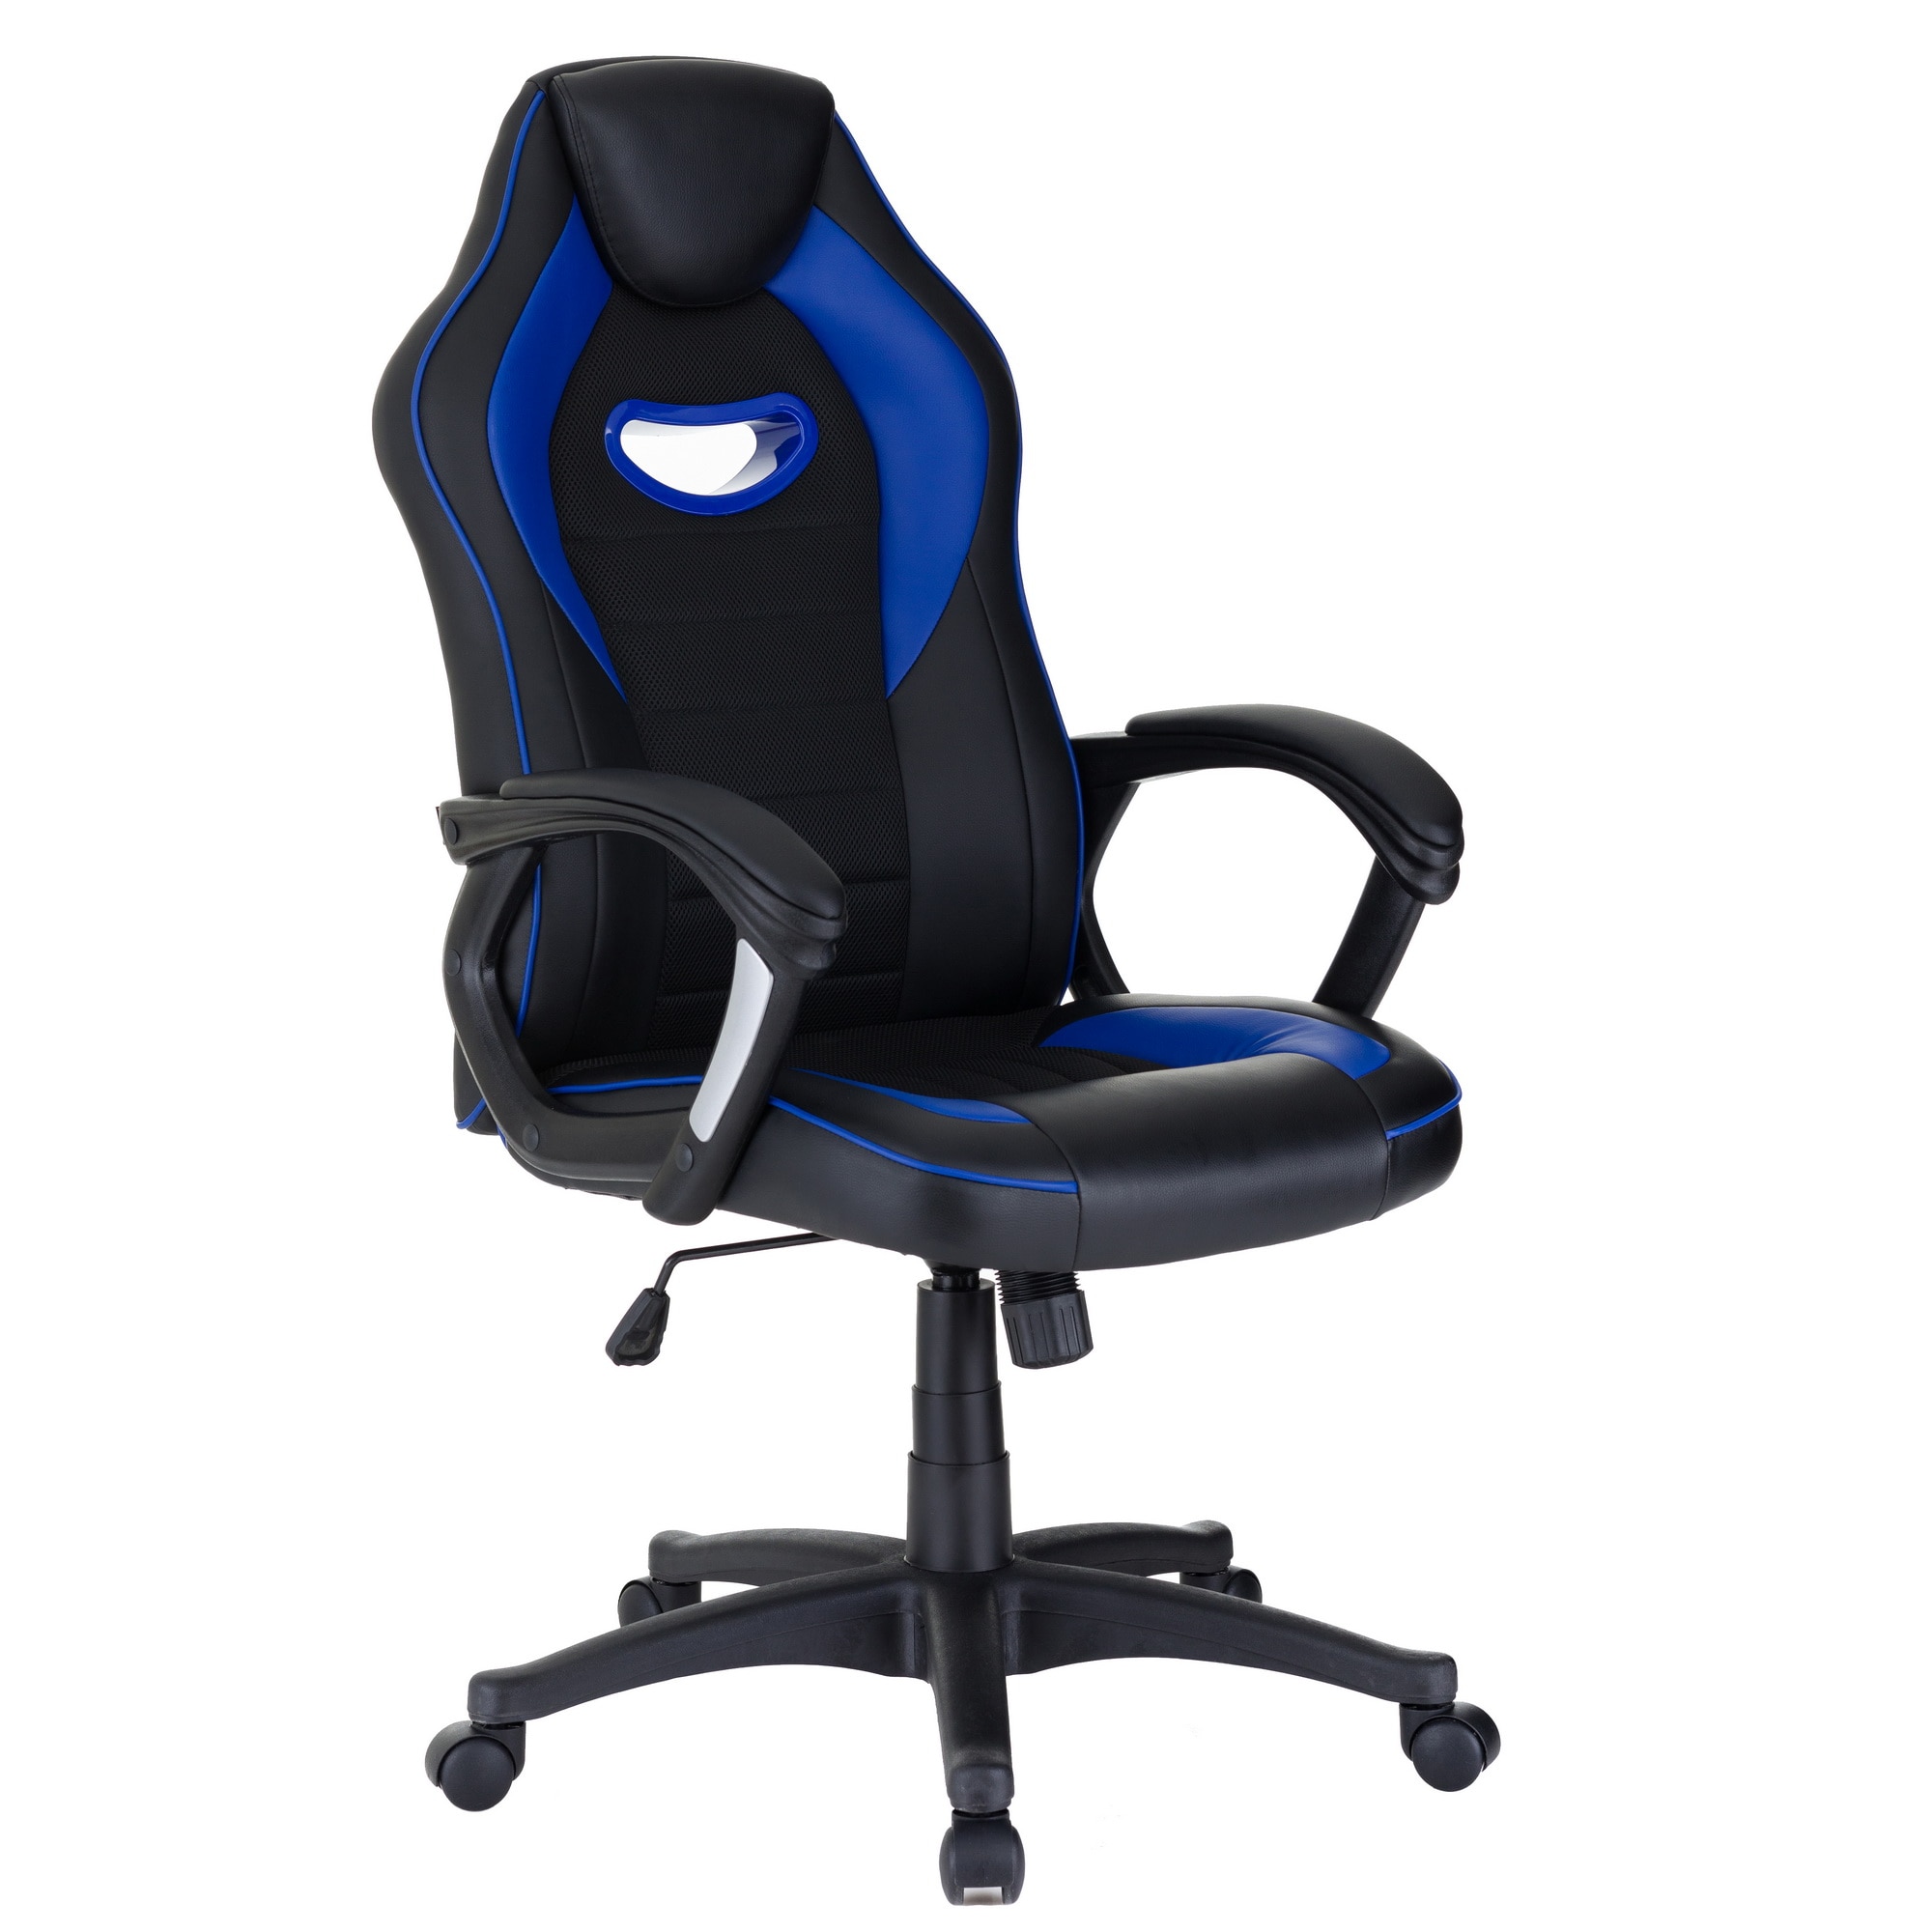 QMOBILI Race gamer szék Kék/Fekete, műbőr, ergonomikus